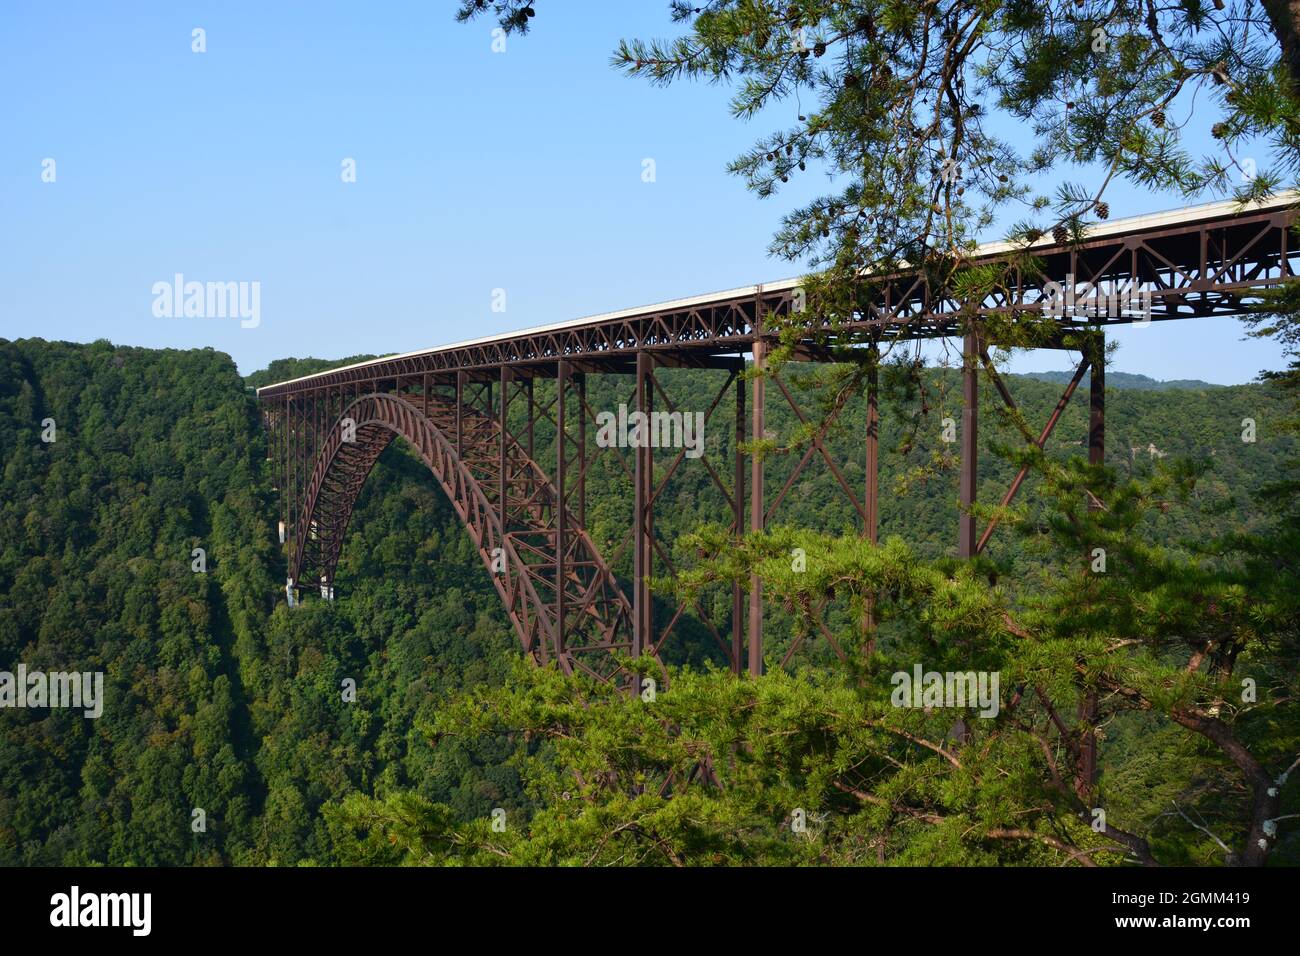 Die New River Gorge Bridge, Teil von Amerikas neuestem Nationalpark, ist 876 Fuß hoch und 3000 Fuß lang und die zweithöchste Stahlbogenbrücke in den USA. Stockfoto